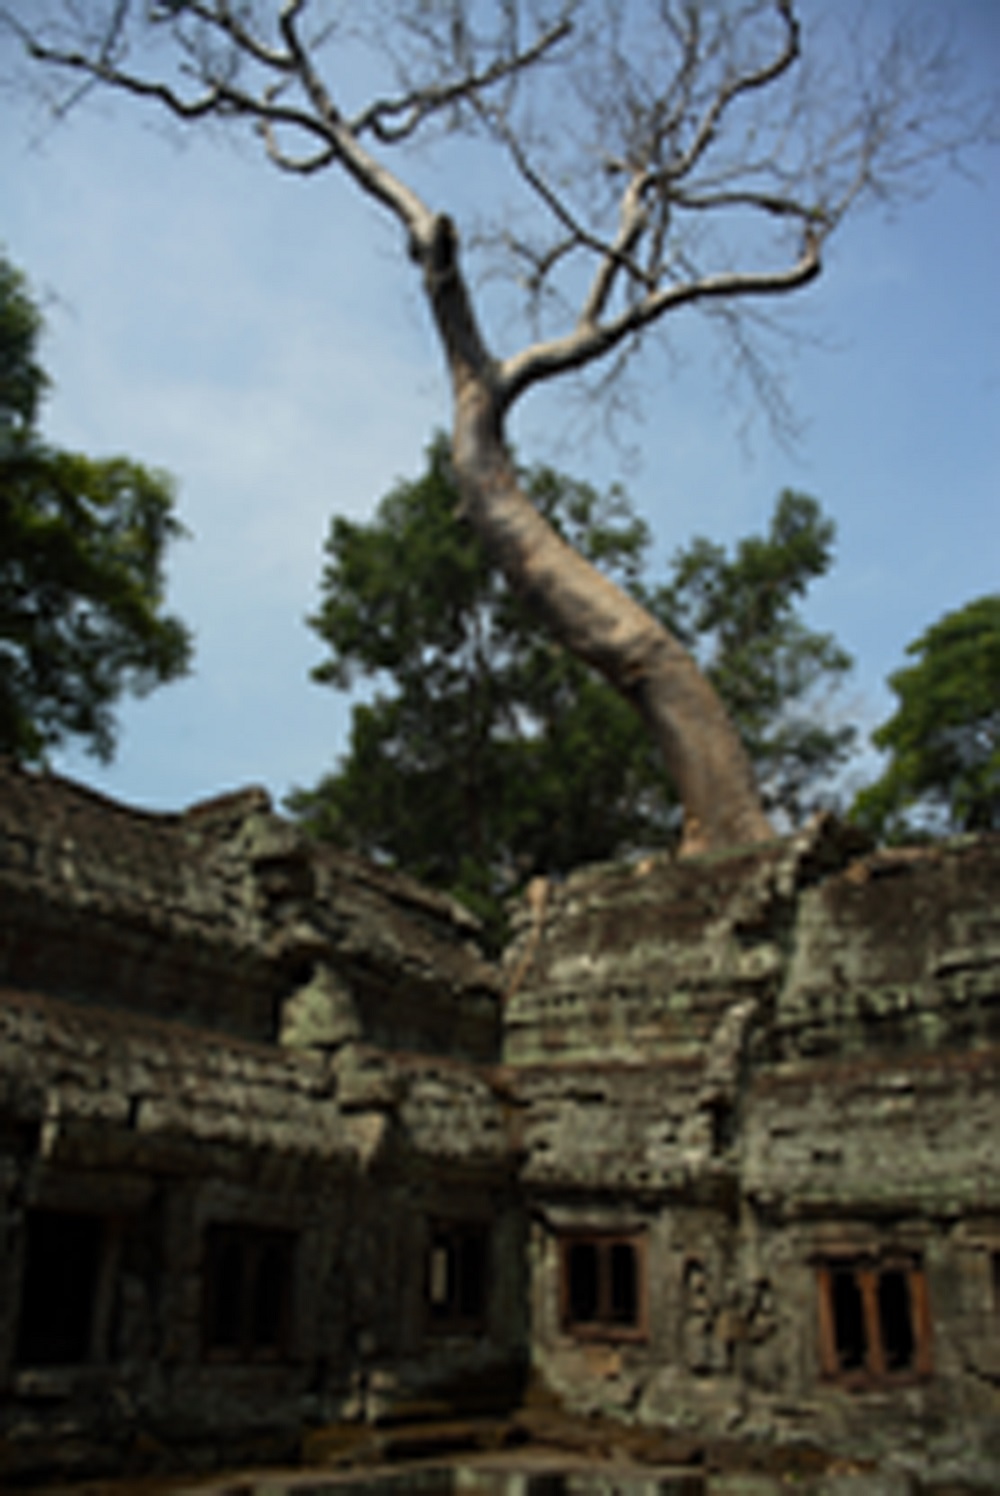   Приключения: Ангкор Ват — ужас и мистика древних. Храм древних богов кхмеров - фото 5